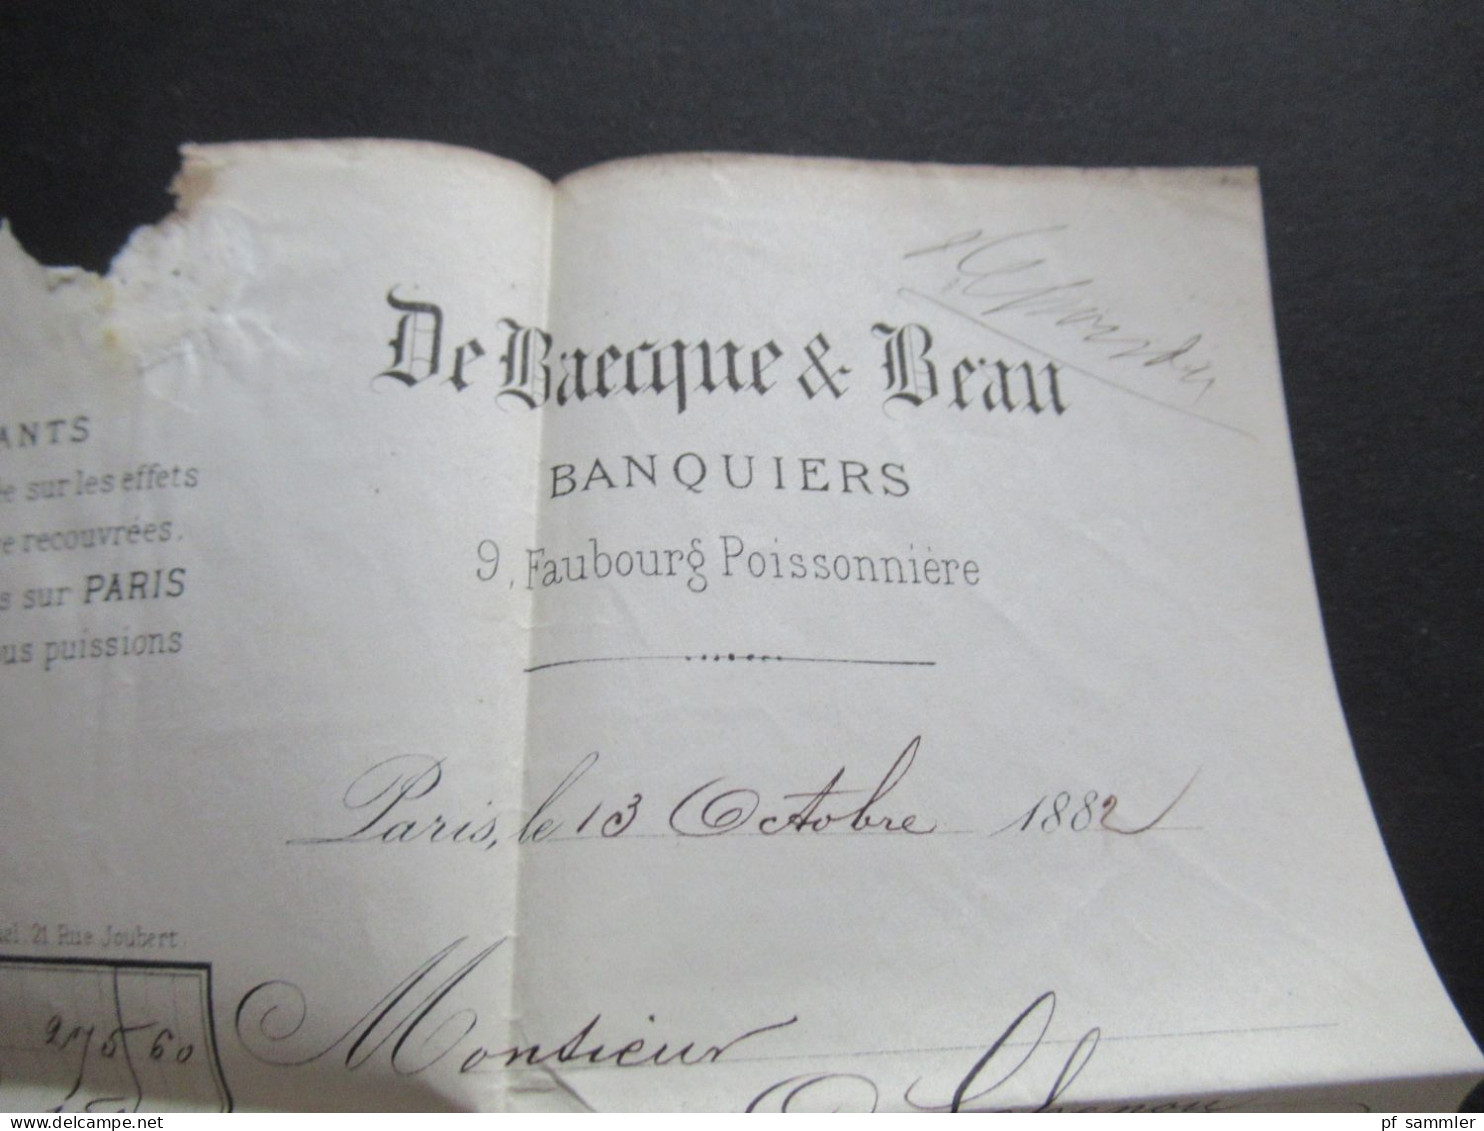 Frankreich 1882 Sage Mi.Nr.64 II EF Stempel Paris / Faltbrief mit Inhalt / Rechnung nach Cosne gesendet